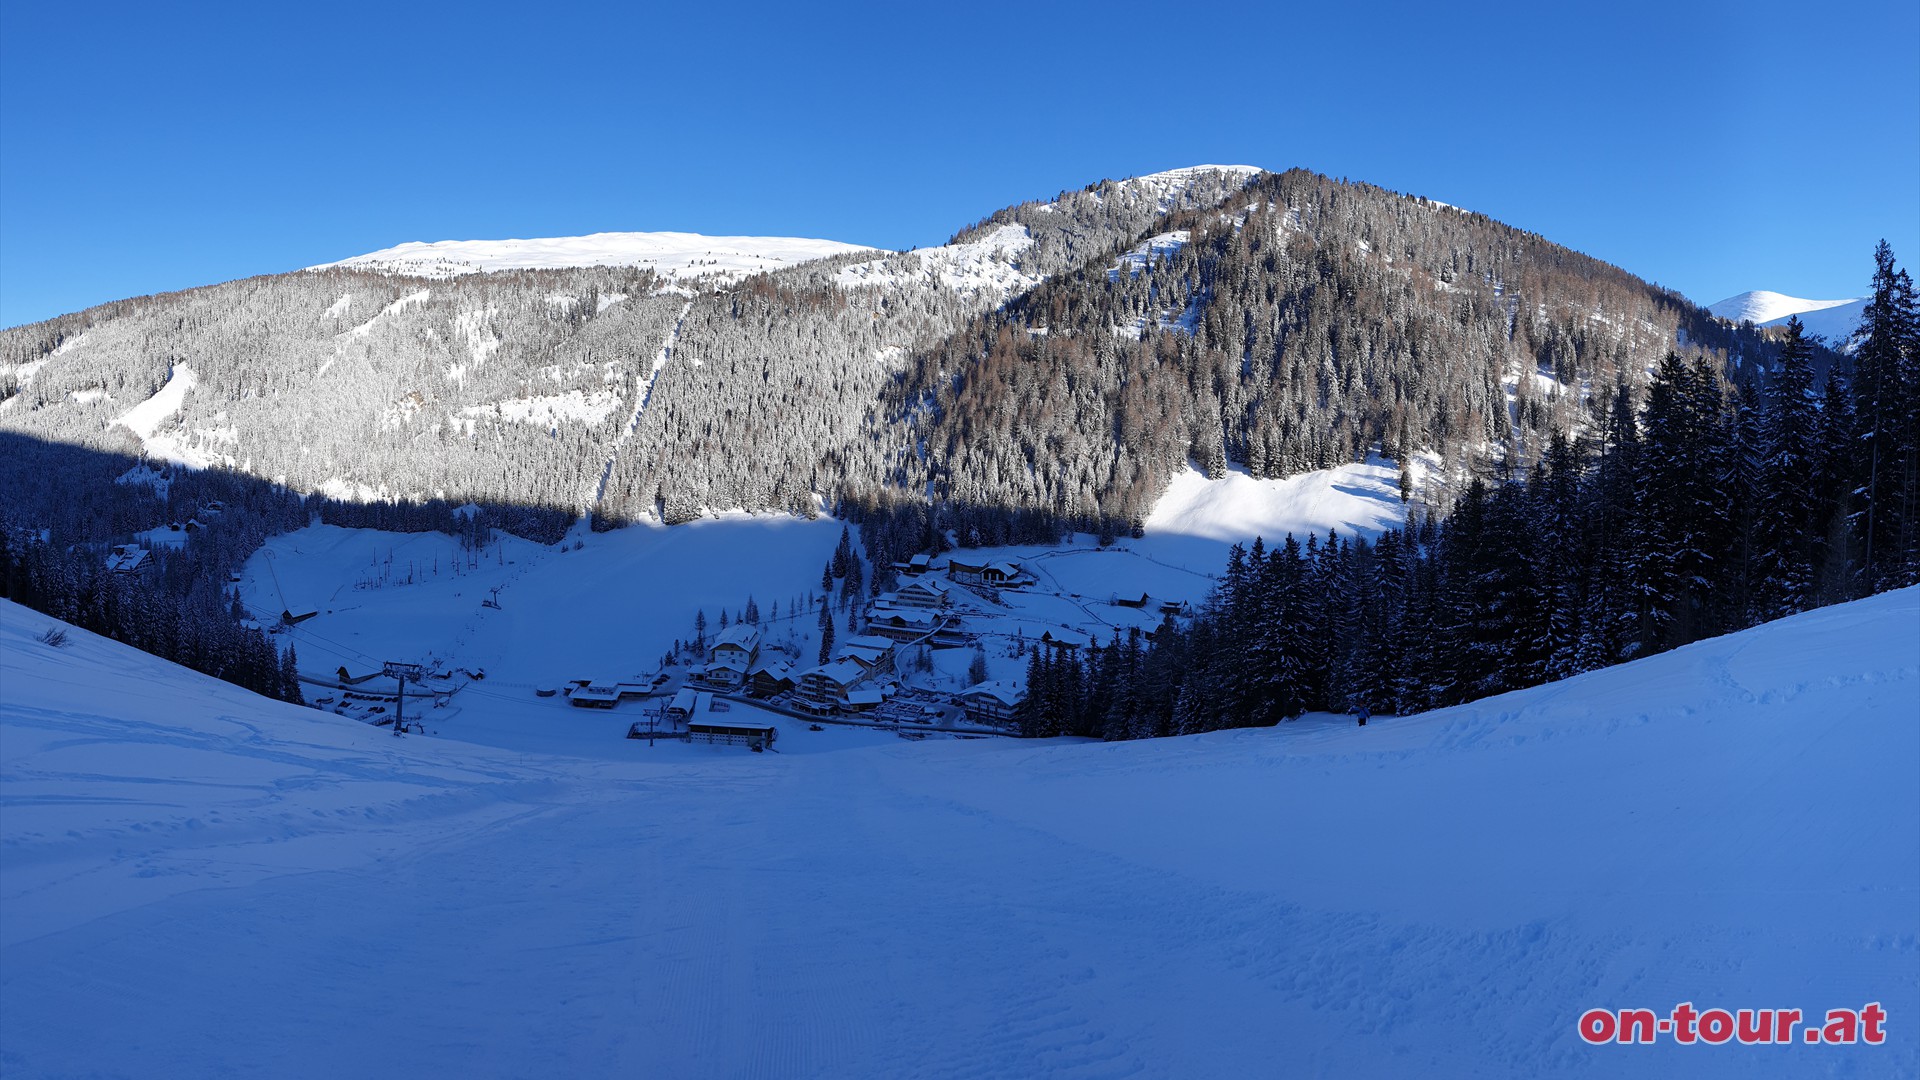 Start; Parkplatz beim Skigebiet in Innerkrems. Aufstieg über die Skipiste Richtung Süden